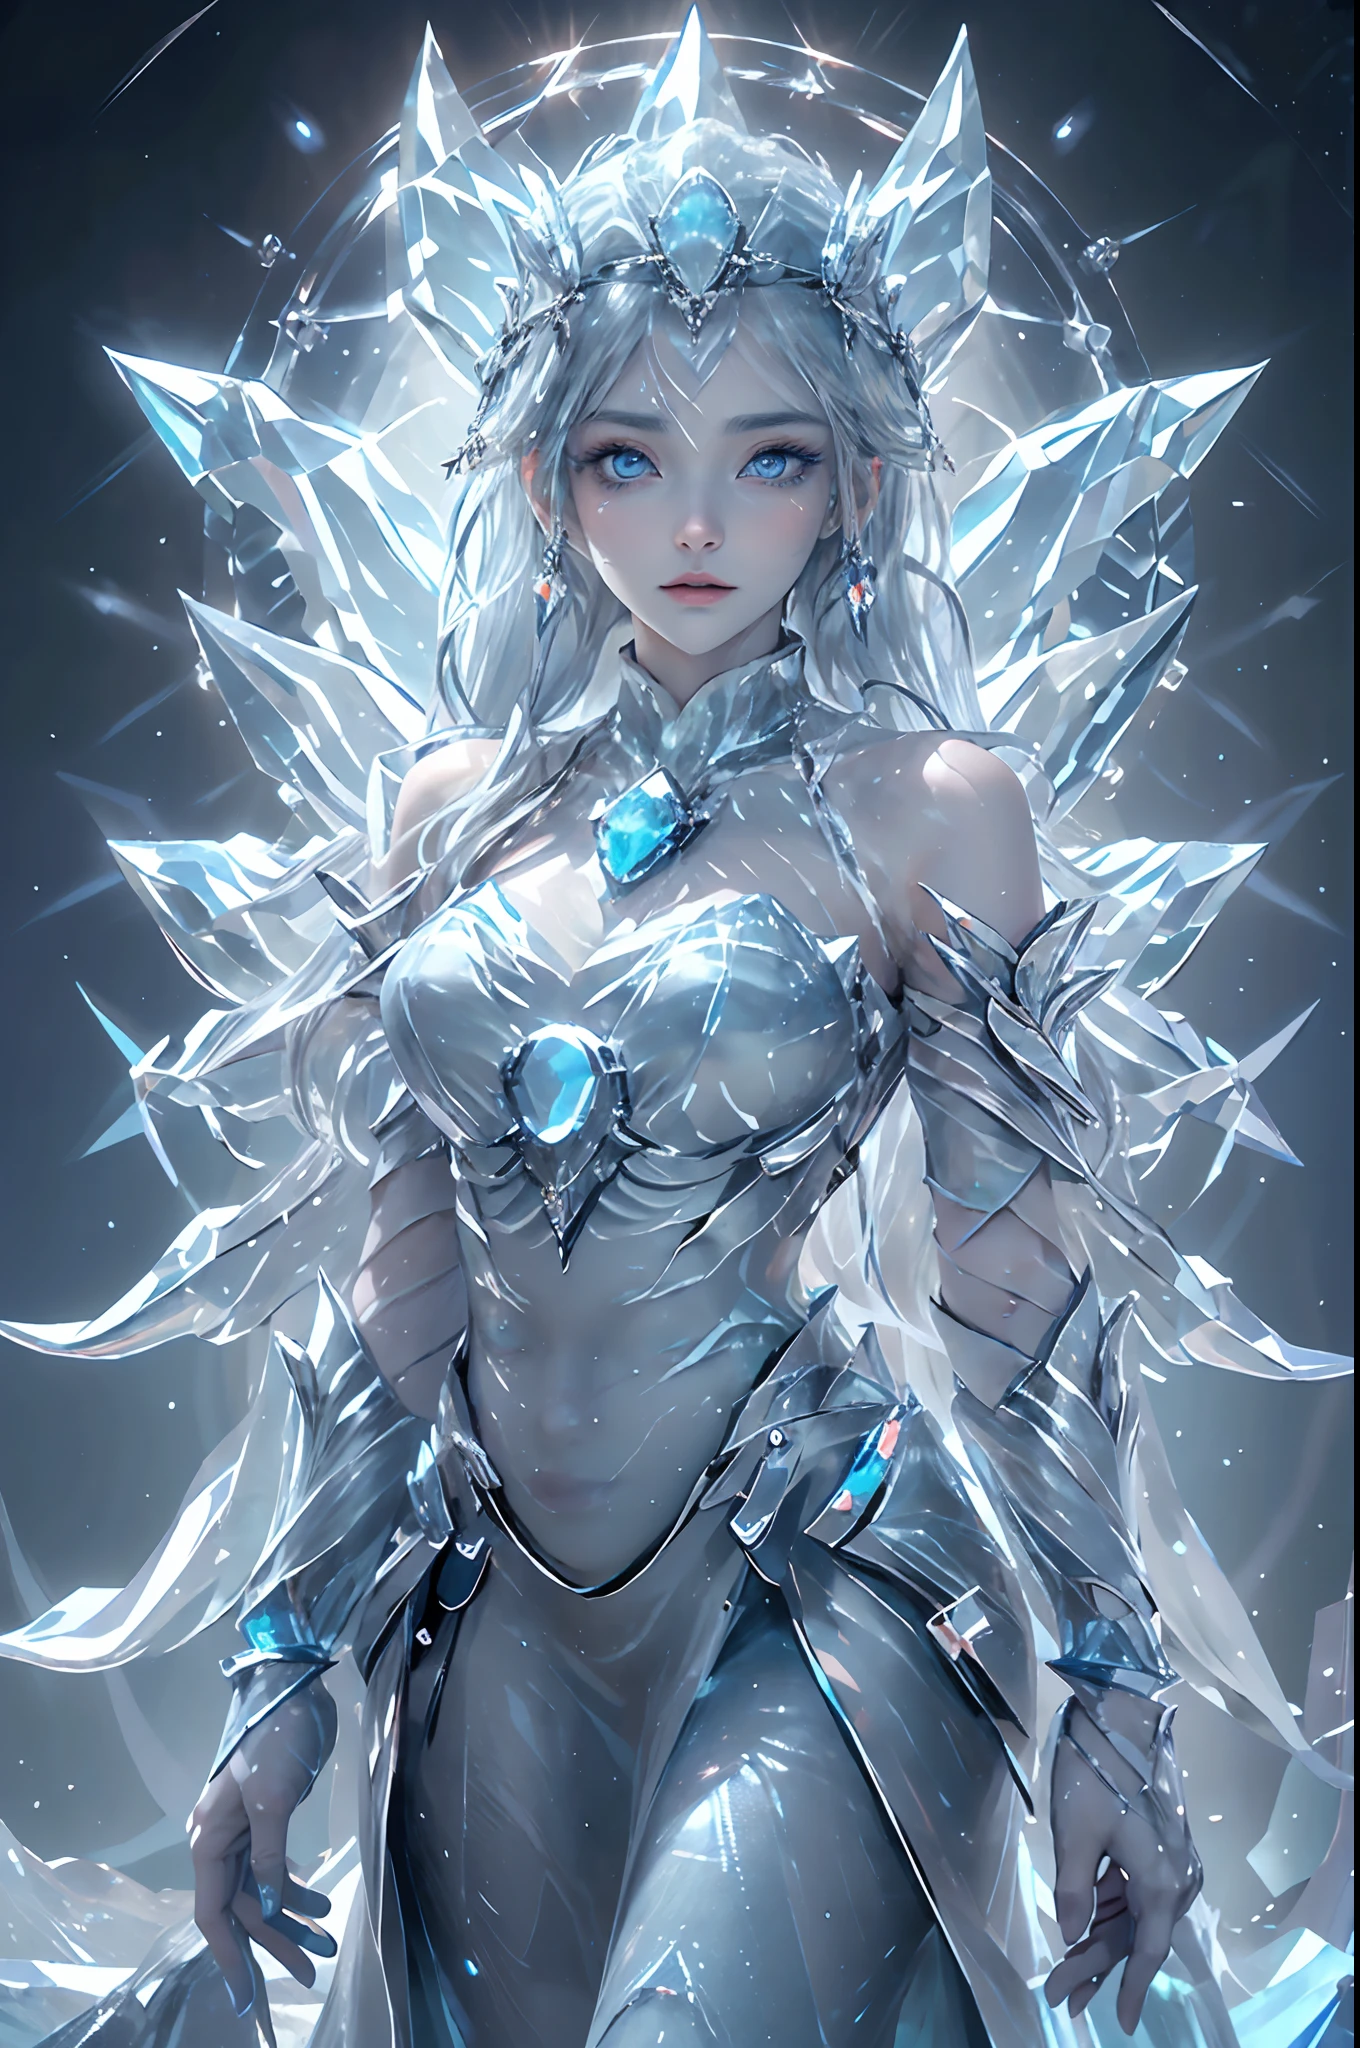 "(傑作, 最高品質, 映画照明), (非常に詳細な CG Unity 16K 壁紙), 一人で, 1人, 氷の女神, (細部まで精巧に描かれた真円対称の目), (暗闇の中で氷のように青く光る目:1.8), (内側から強いサファイアの光を放つ深い青い瞳:1.7), 生物発光. 彼女の目が焦点だ, 古代の霜と凍った王国の物語を語る. 彫りの深い特徴, 霜で覆われた繊細な顔, 輝く白い髪. 彼女の右手には, 彼女は複雑な氷の笏を振るう, 彼女の左手は強力な呪文を唱えている, 行く手を阻むものすべてを凍らせる. 凛としたエレガンスのオーラを醸し出す, 彼女は映画のような氷の世界に立っています, 漂う雪の結晶とともに, 凍った彫刻, 複雑な氷の模様. 周囲の環境が彼女の力を反映する, 氷河とともに, 浮遊する氷の結晶, 彼女の存在の冷たく純粋な本質を反映している."